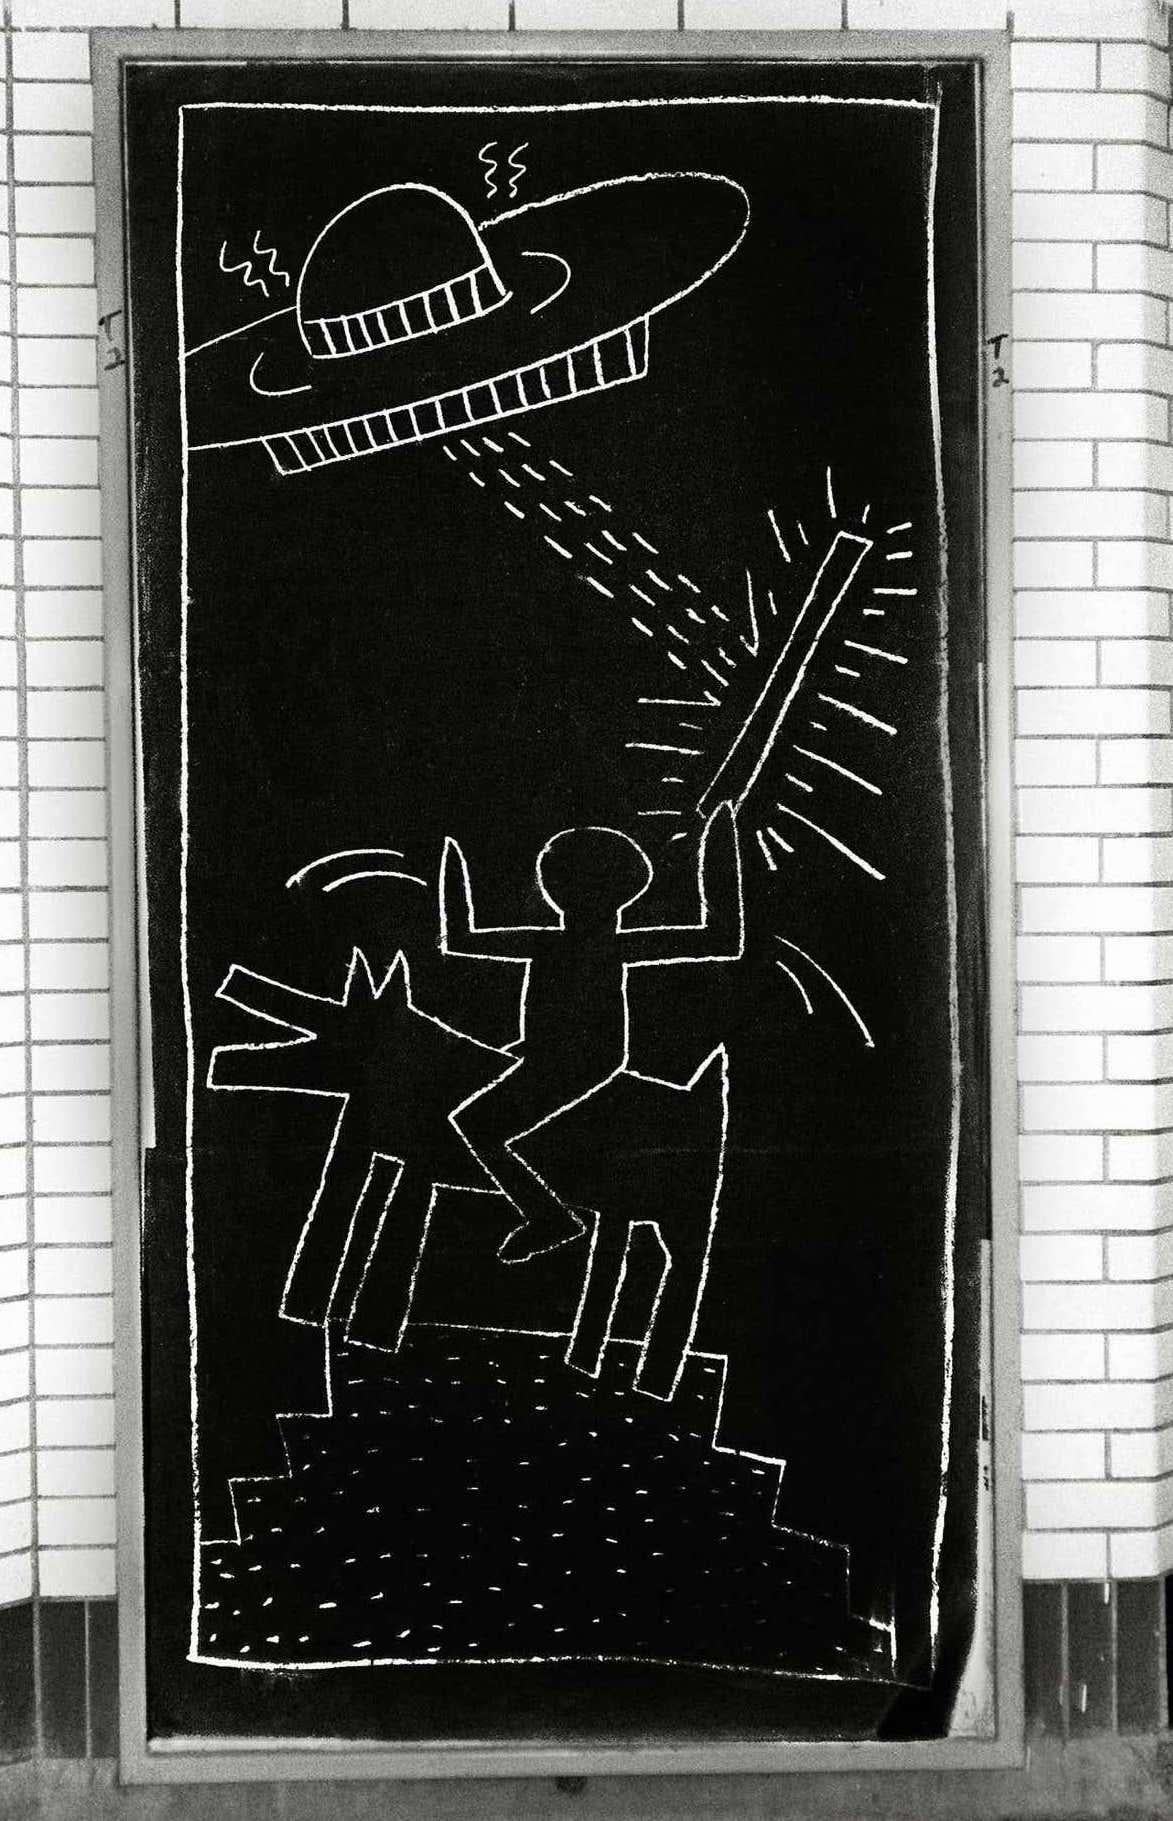 U-Bahn-Zeichnungen von Keith Haring Fotografie:
Dieses Foto hält Keith Harings epische Eroberung fest, bei der er in den frühen 80er Jahren öffentliche Kunst auf den Bahnsteigen der New Yorker U-Bahn schuf. Haring beabsichtigte, diese Zeichnungen